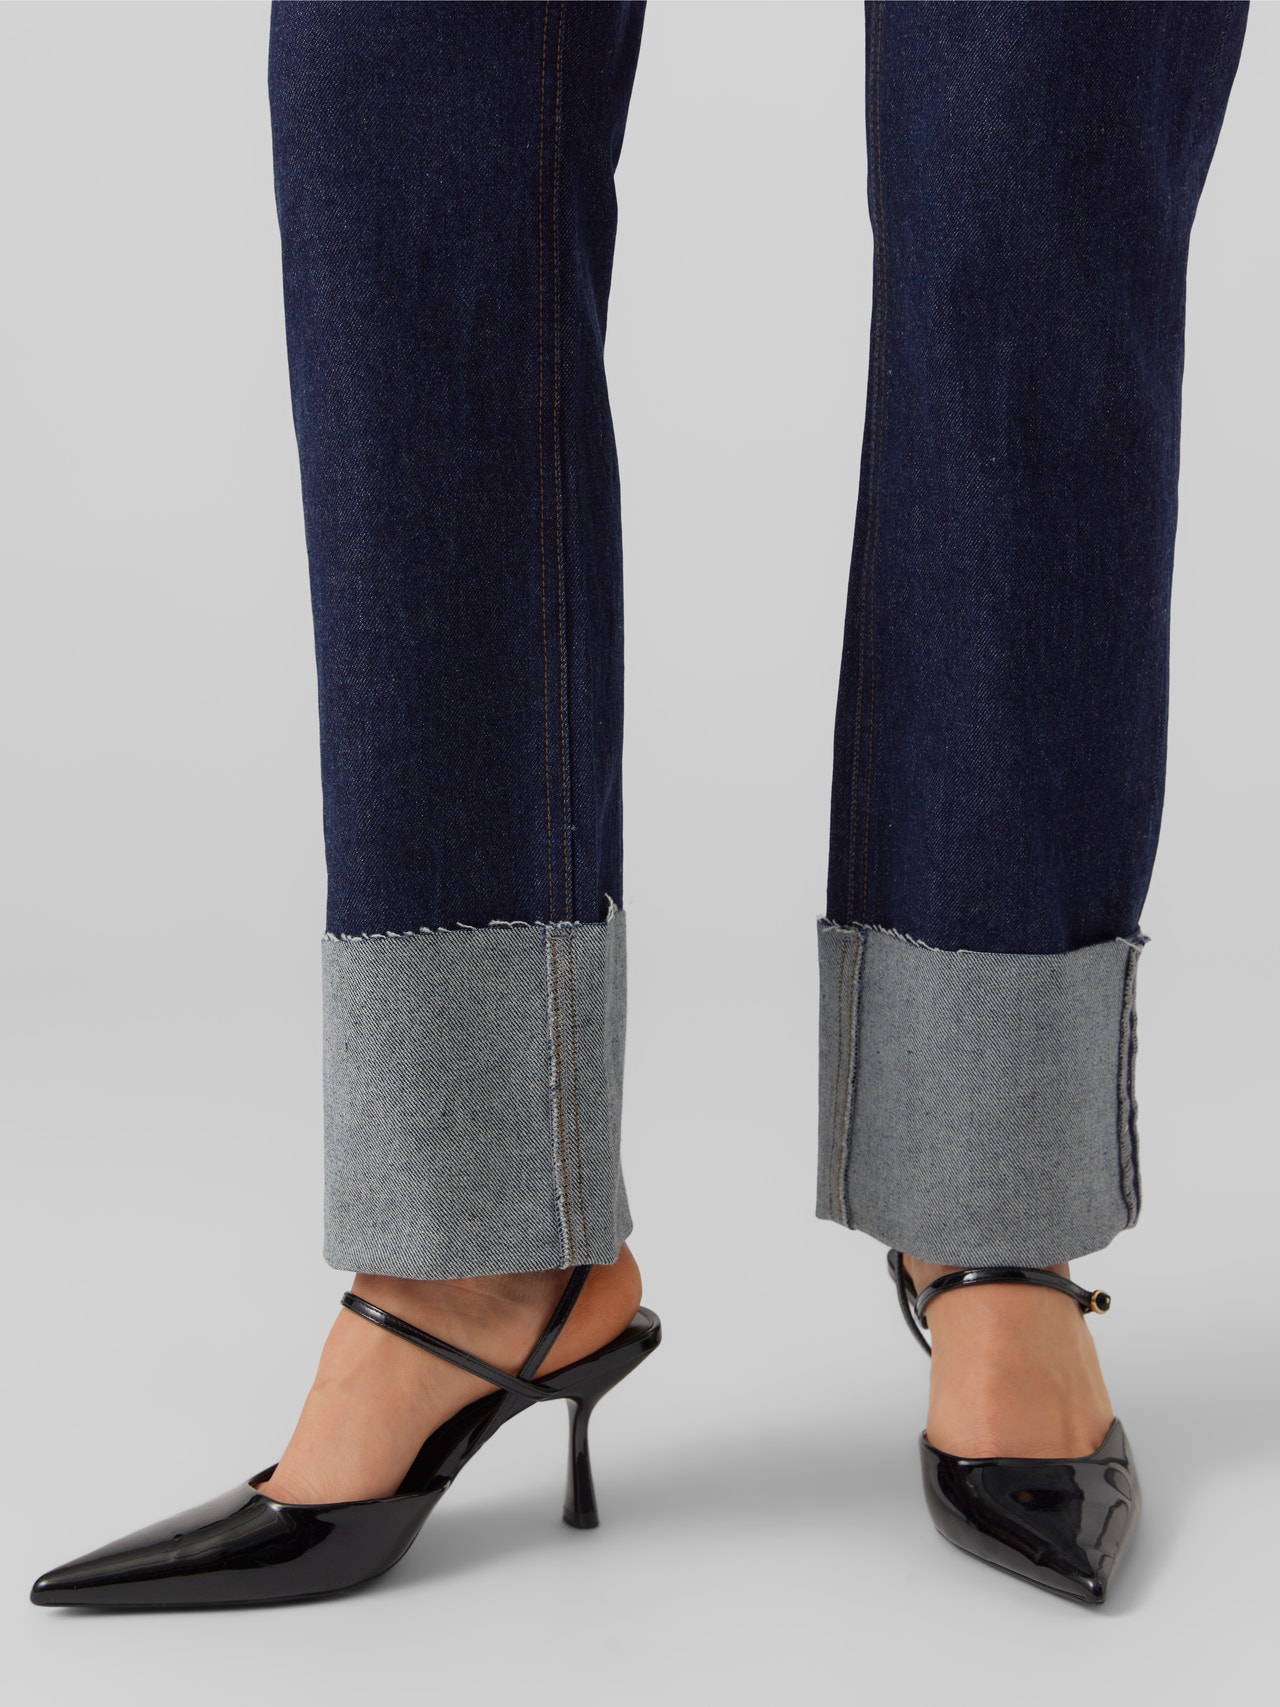 Vero Moda VMDREW Gerade geschnitten Jeans -Dark Blue Denim - 10272321